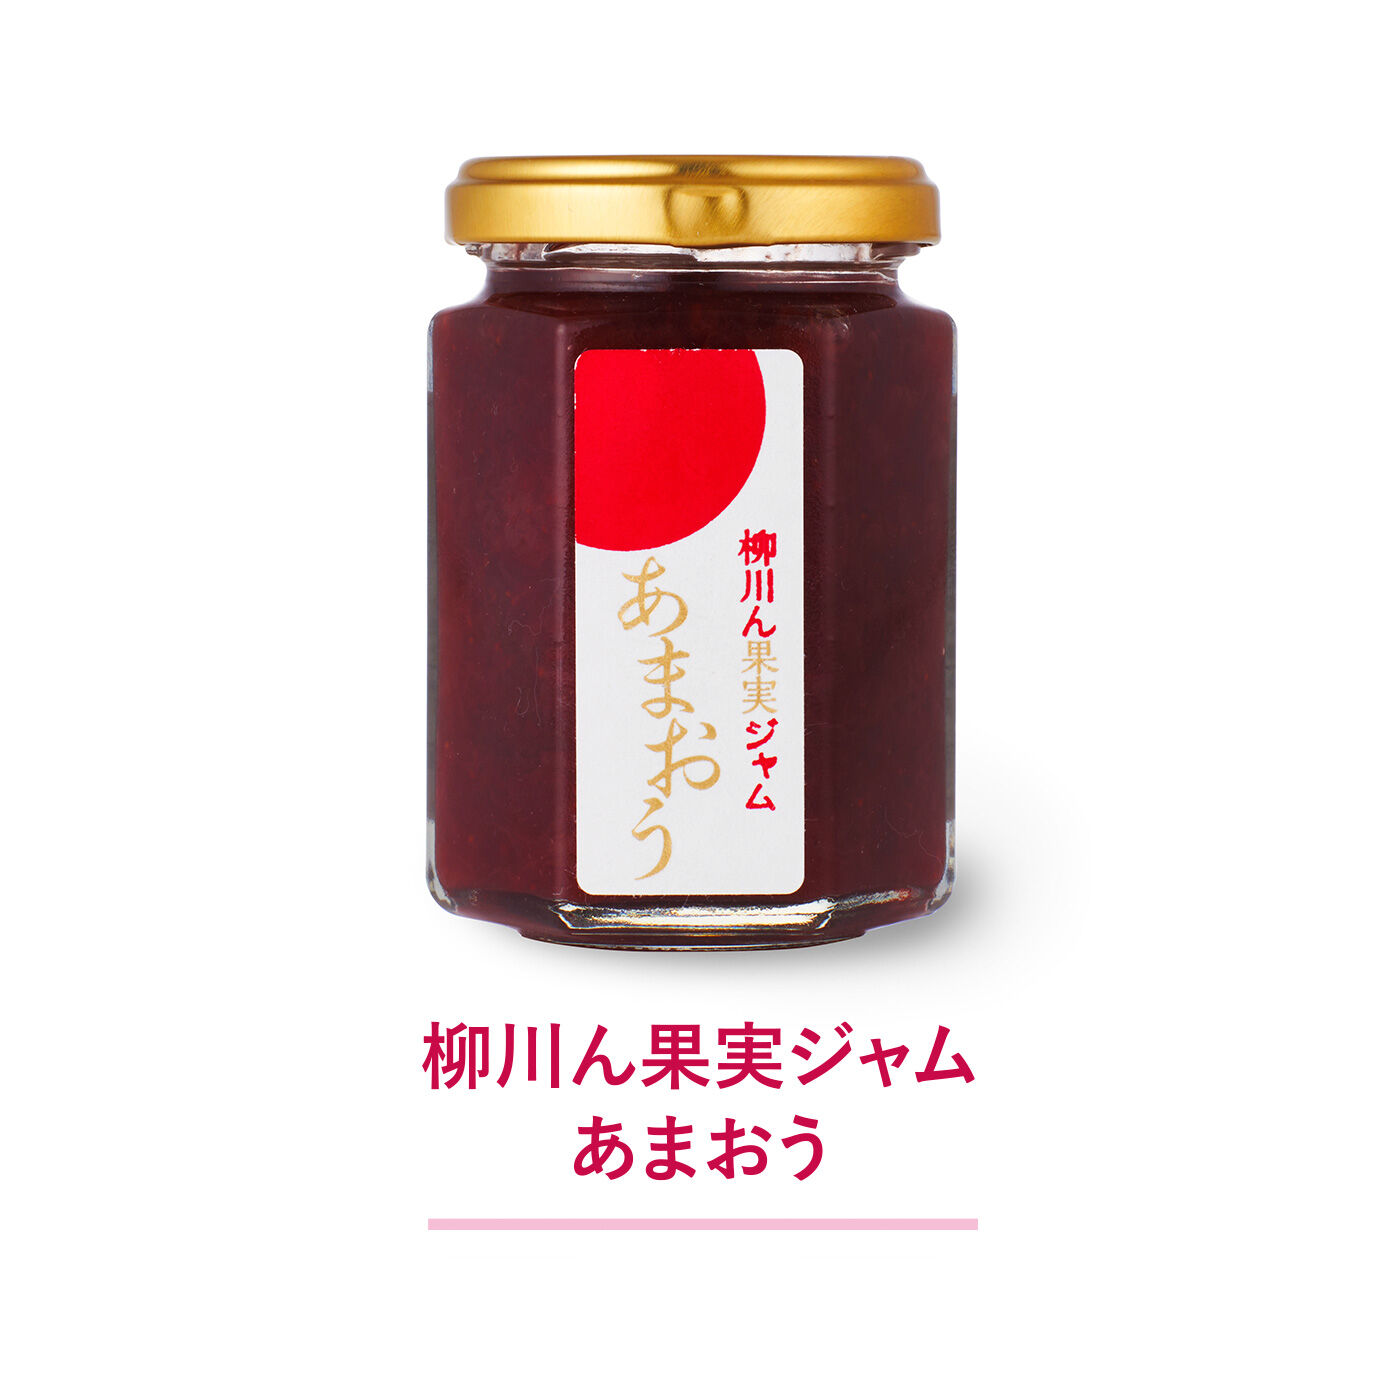 純農|純農 比べてもっと好きになる！ 日本各地から集まったイチゴジャムメドレーの会（5回予約）|柳川産「あまおう」の美味しさが広がるジャム。ビートグラニュー糖を使用。（160g）